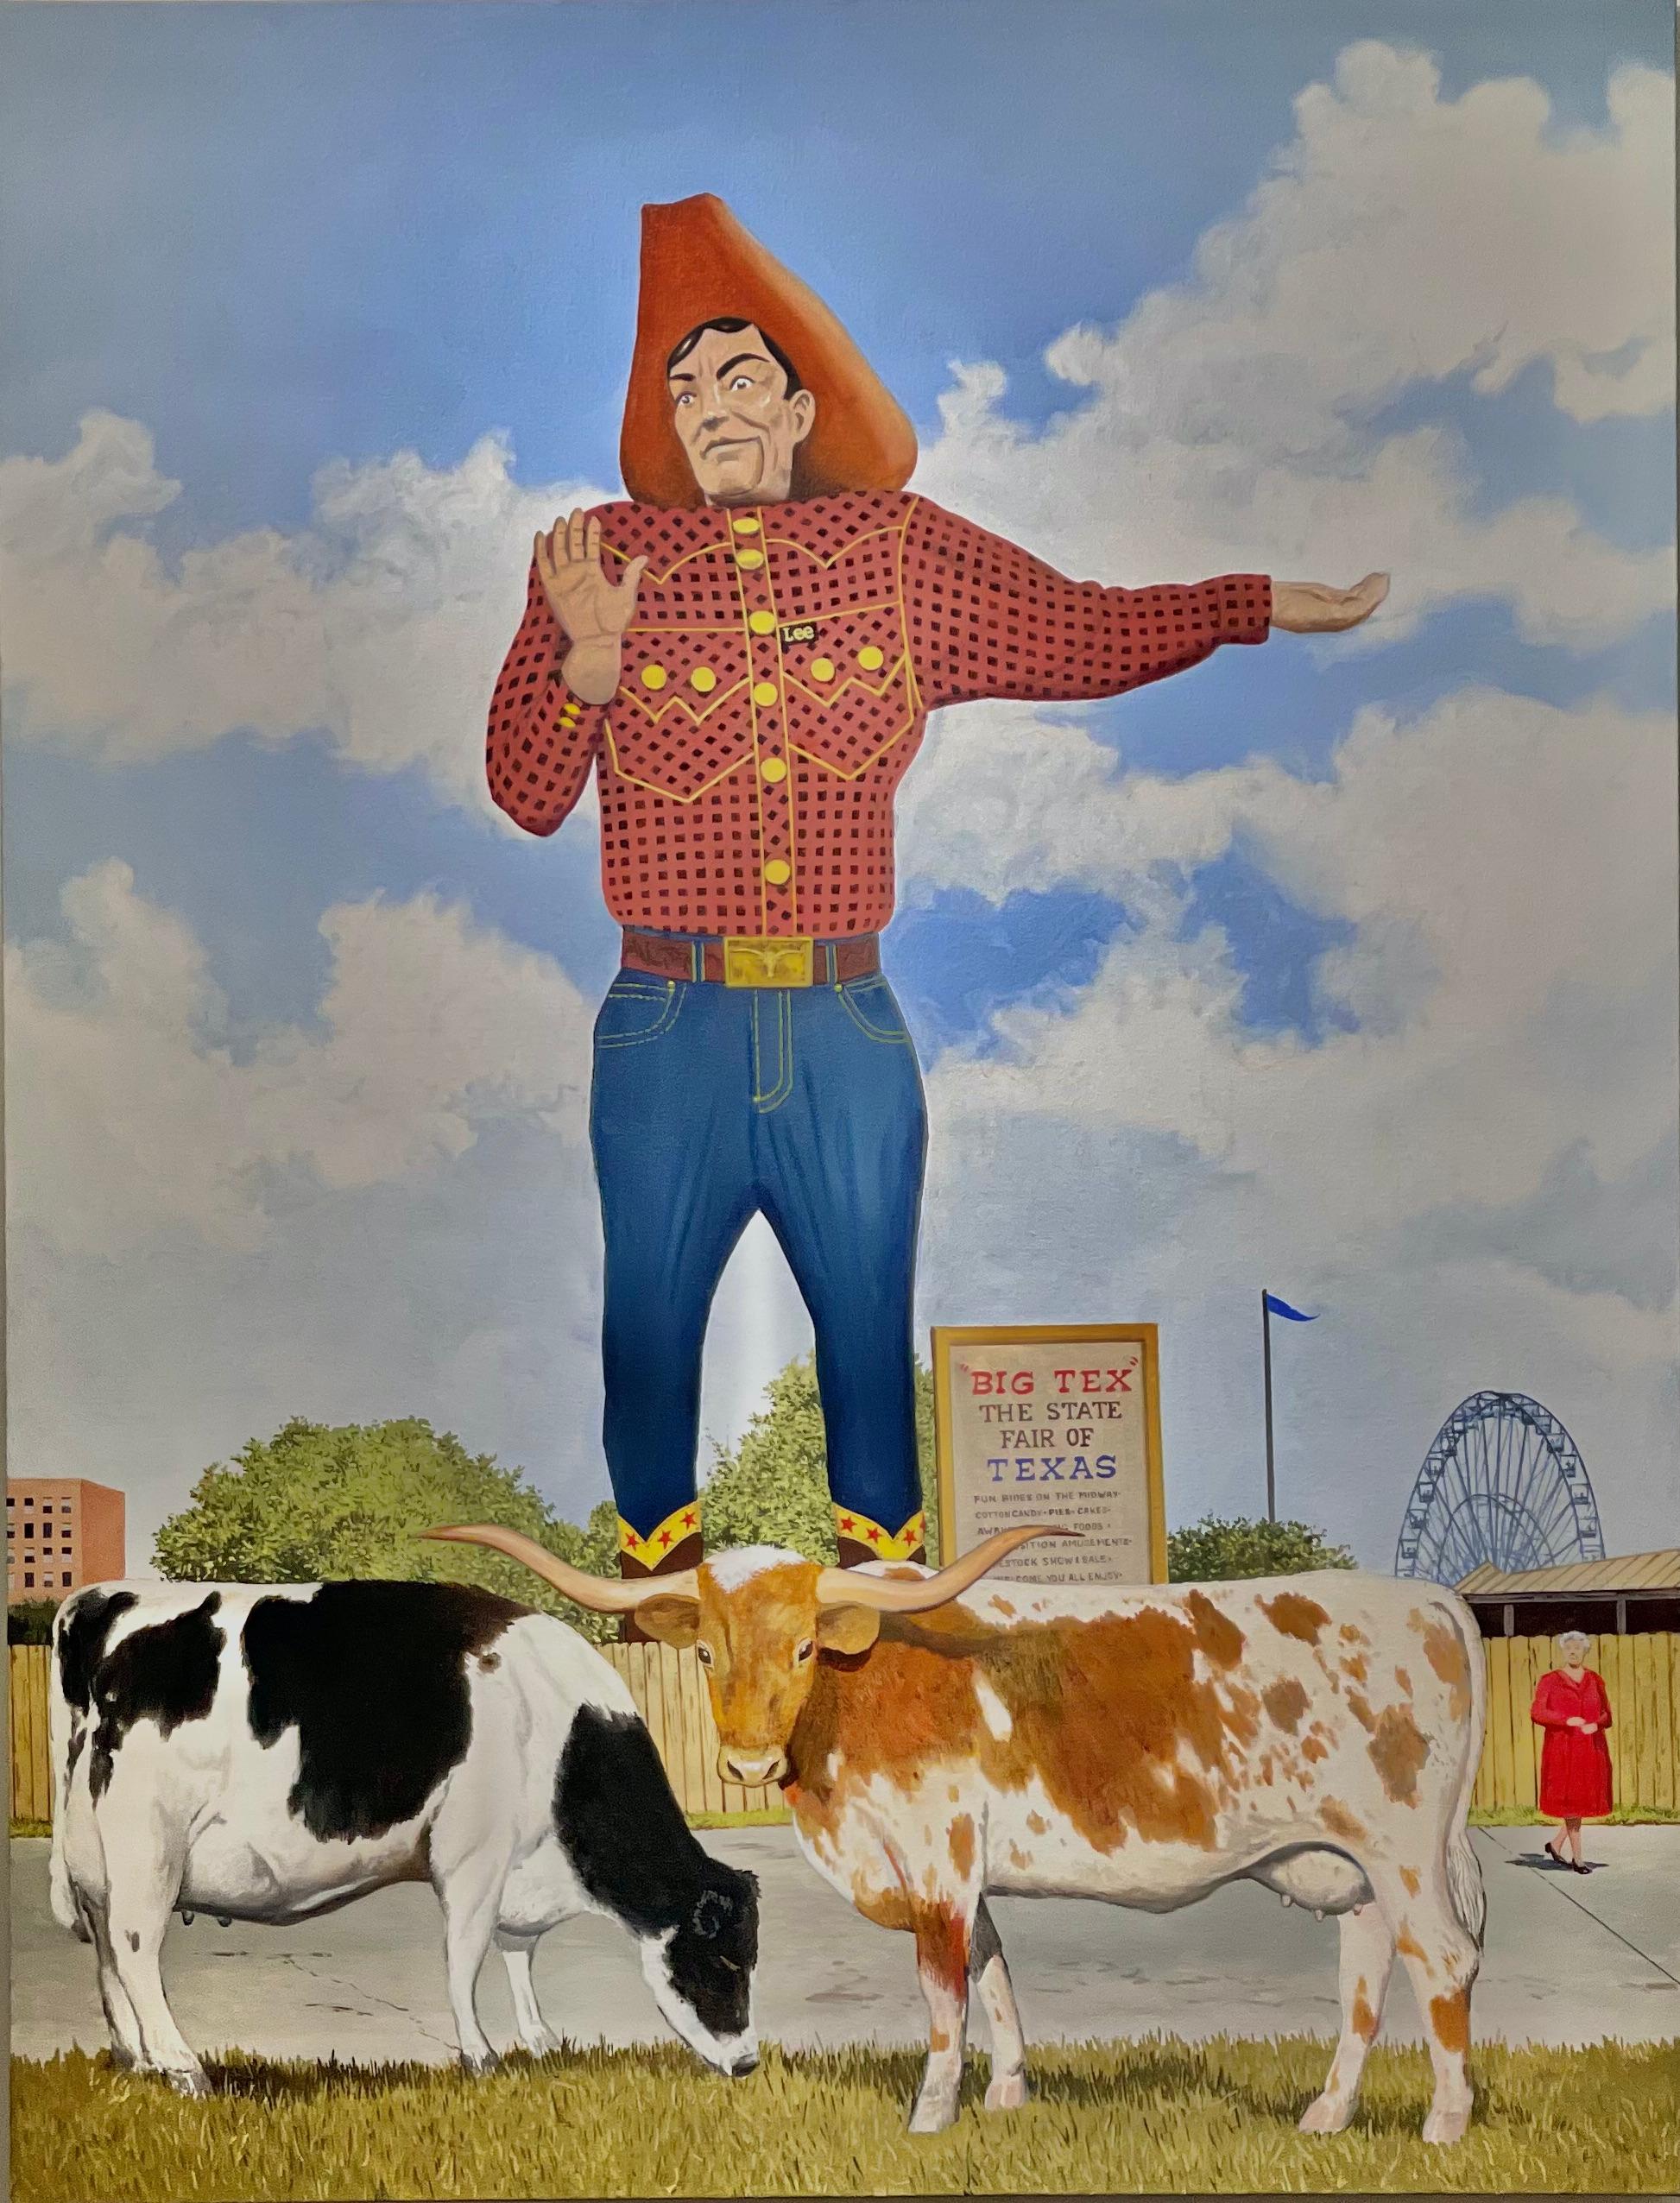 Still-Life Painting Daniel Blagg - Peinture à l'huile américaine contemporaine avec le Big Tex, le cowboy et la foire d'État du Texas